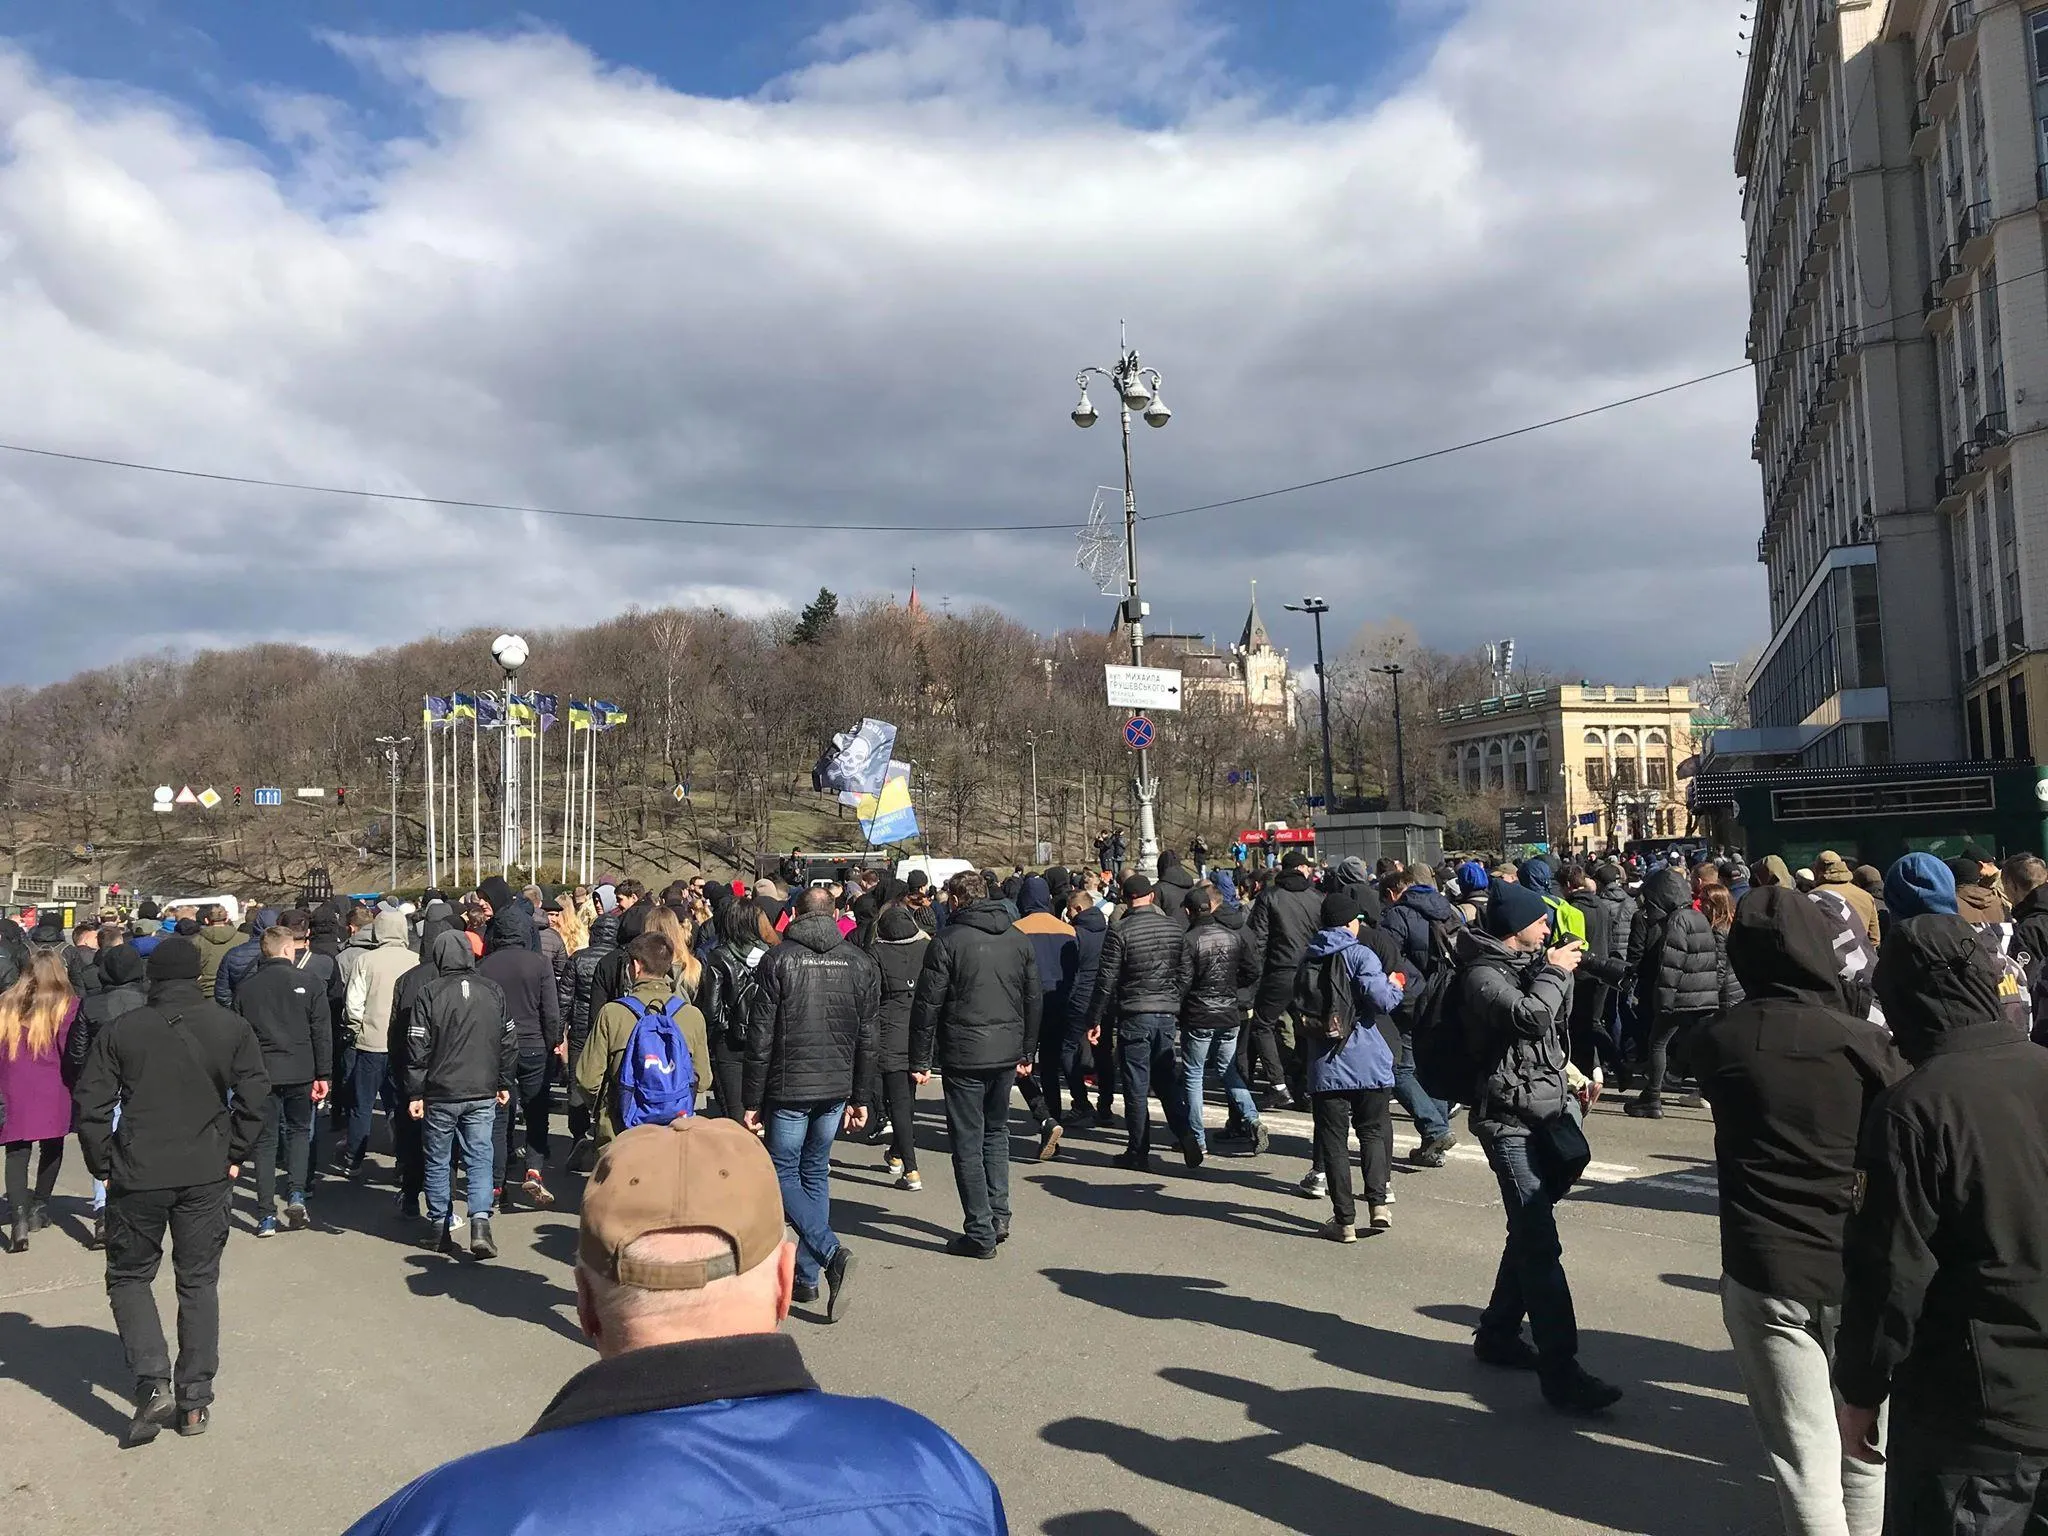 Митинг Нацкорпуса в Киеве